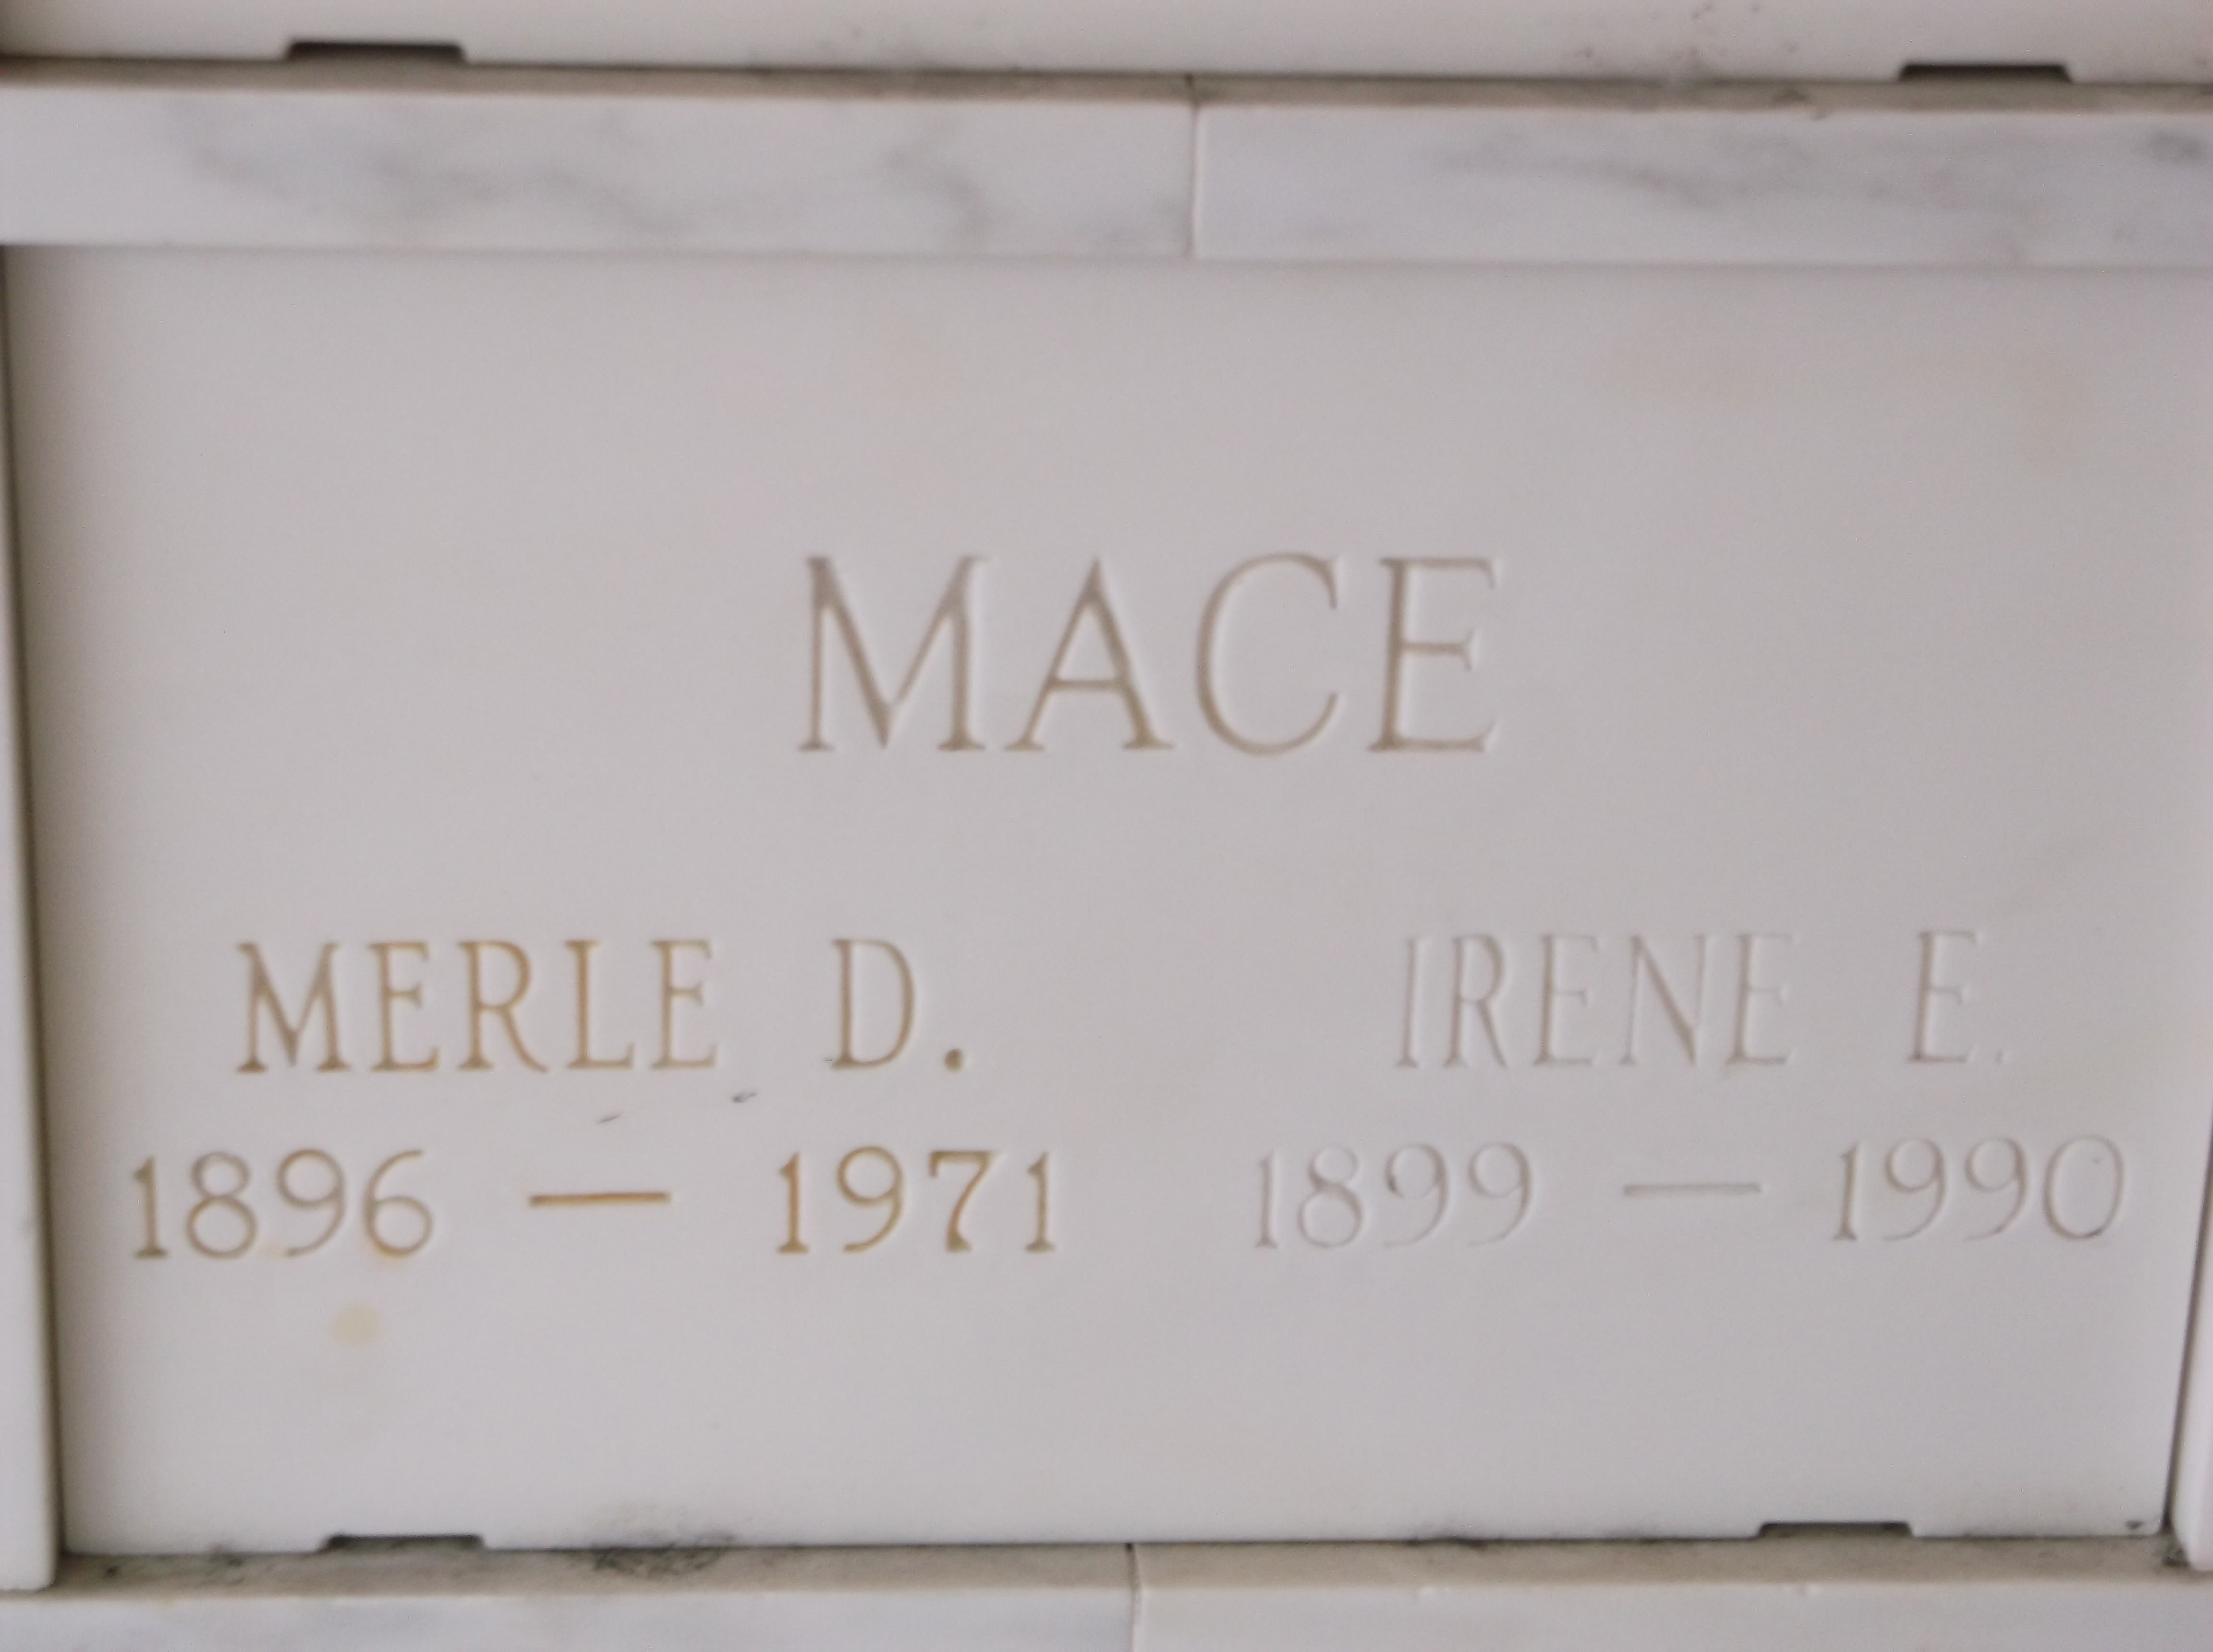 Irene E Mace